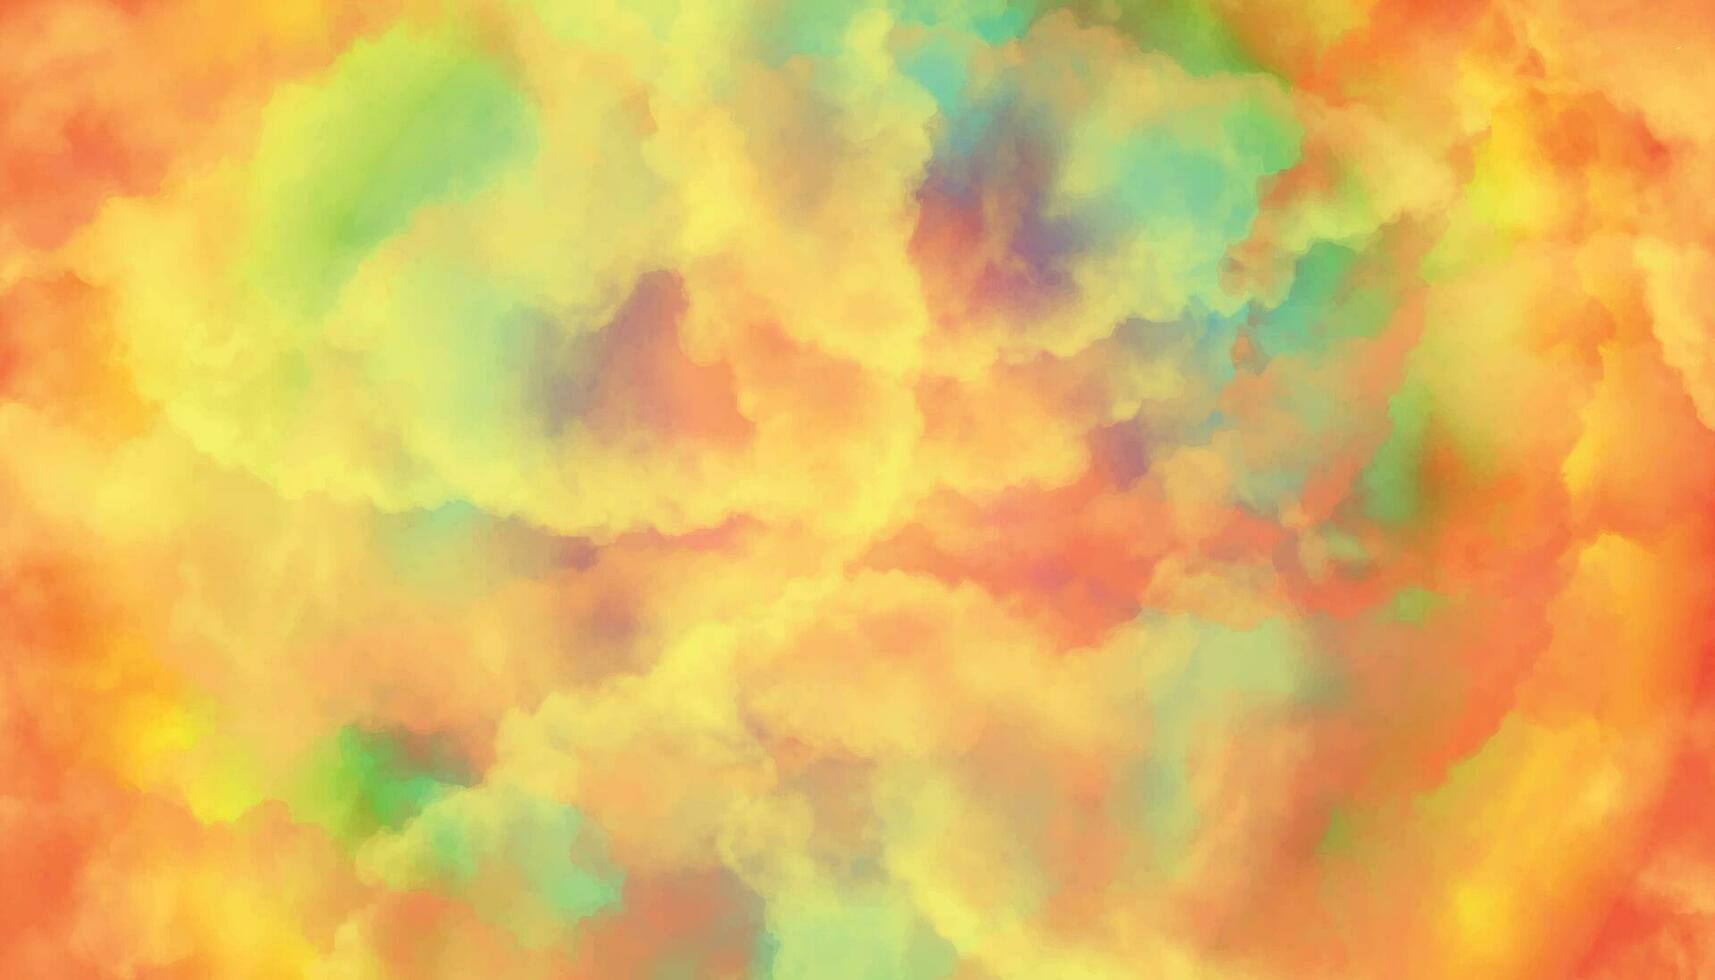 rot und Gelb Hintergrund, abstrakt Aquarell Hintergrund mit Raum. bunt Sonnenaufgang oder Sonnenuntergang Farben im wolkig Formen. schön Farbtöne von Gelb im Hand gemalt Aquarell Hintergrund. vektor